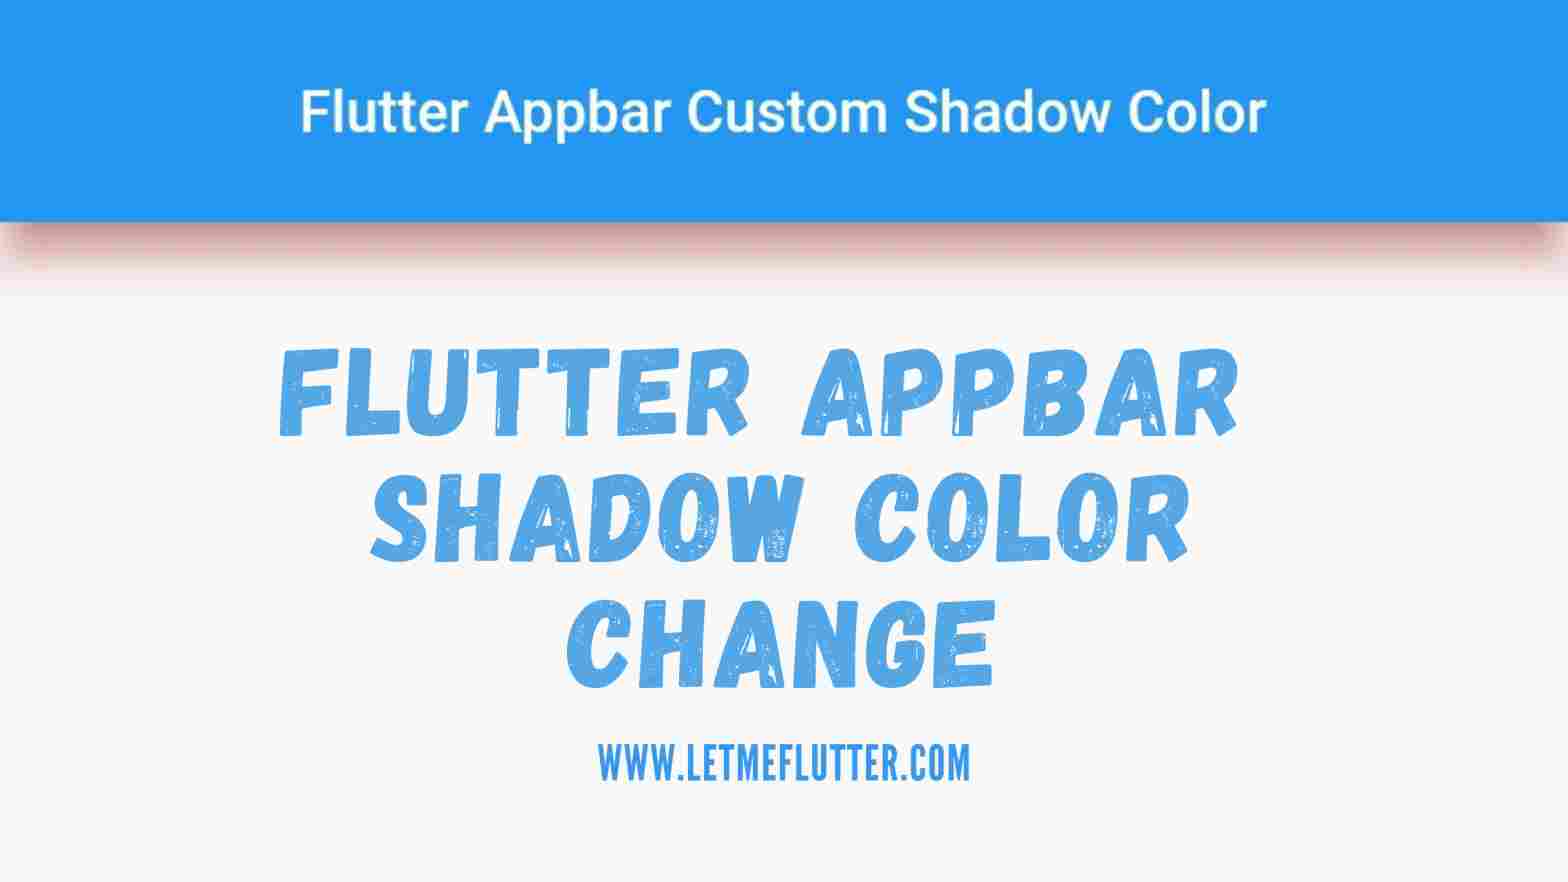 Flutter appbar shadow color